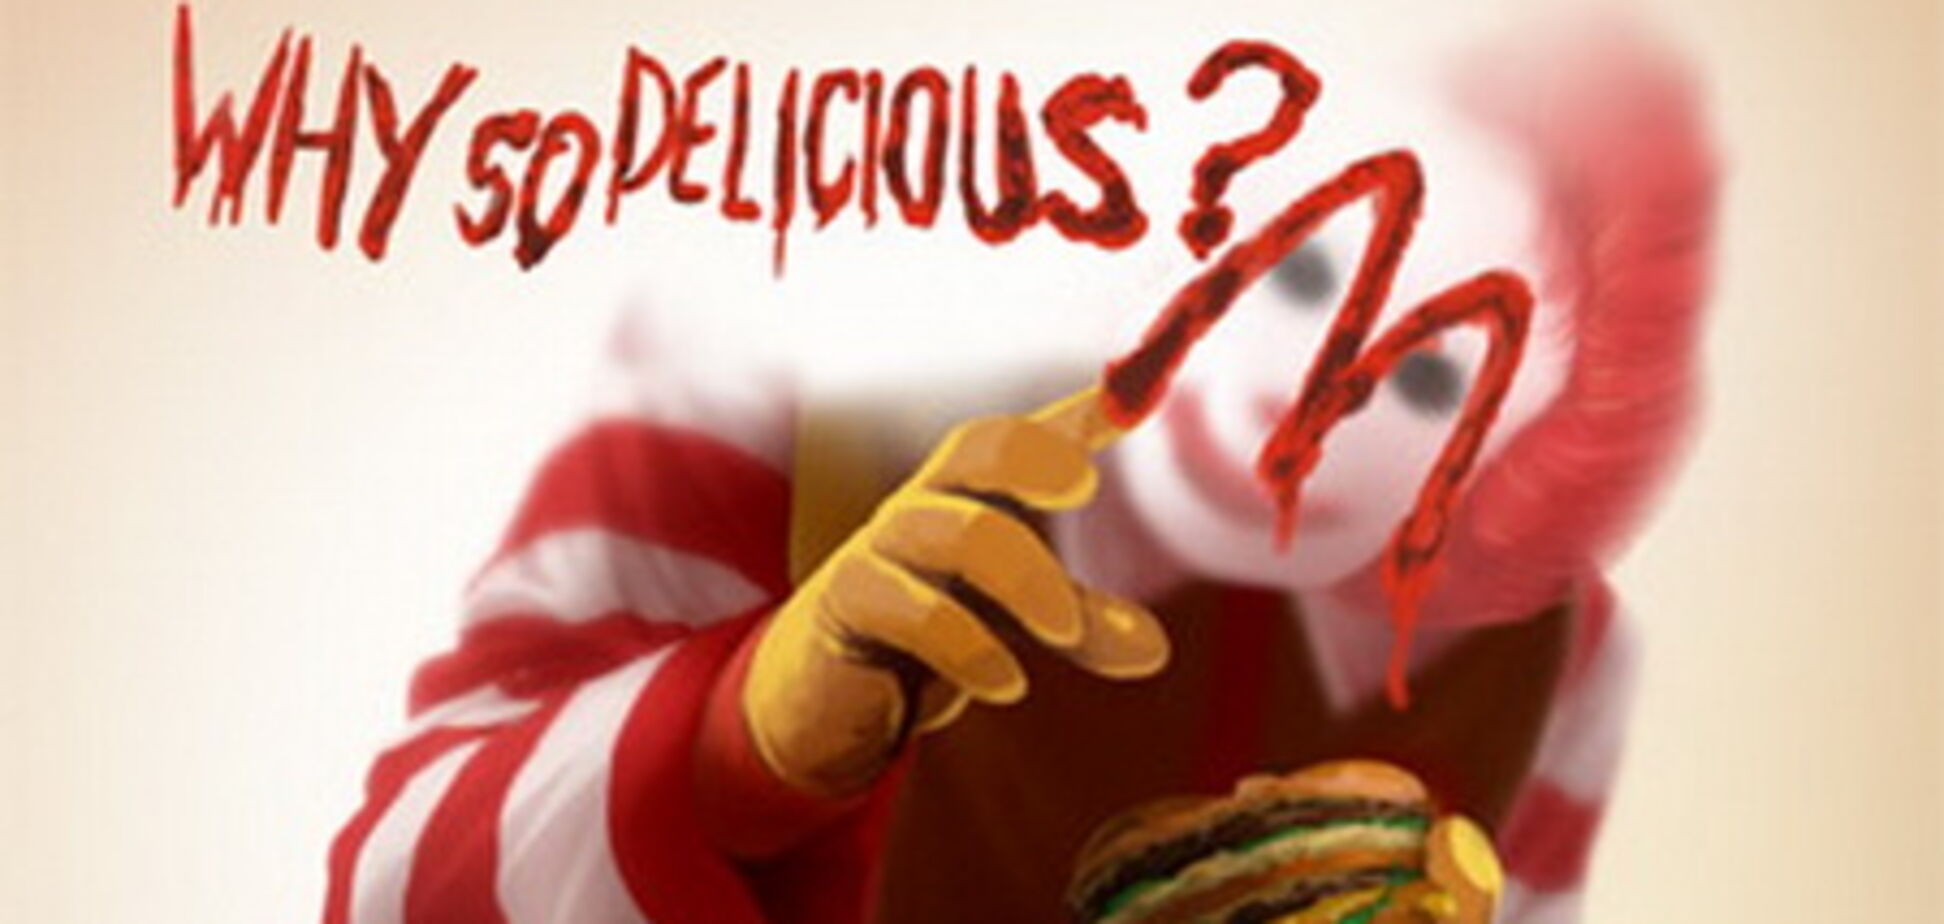 «Макдональдс» заставят заменить клоунов на стенды об ожирении
	

